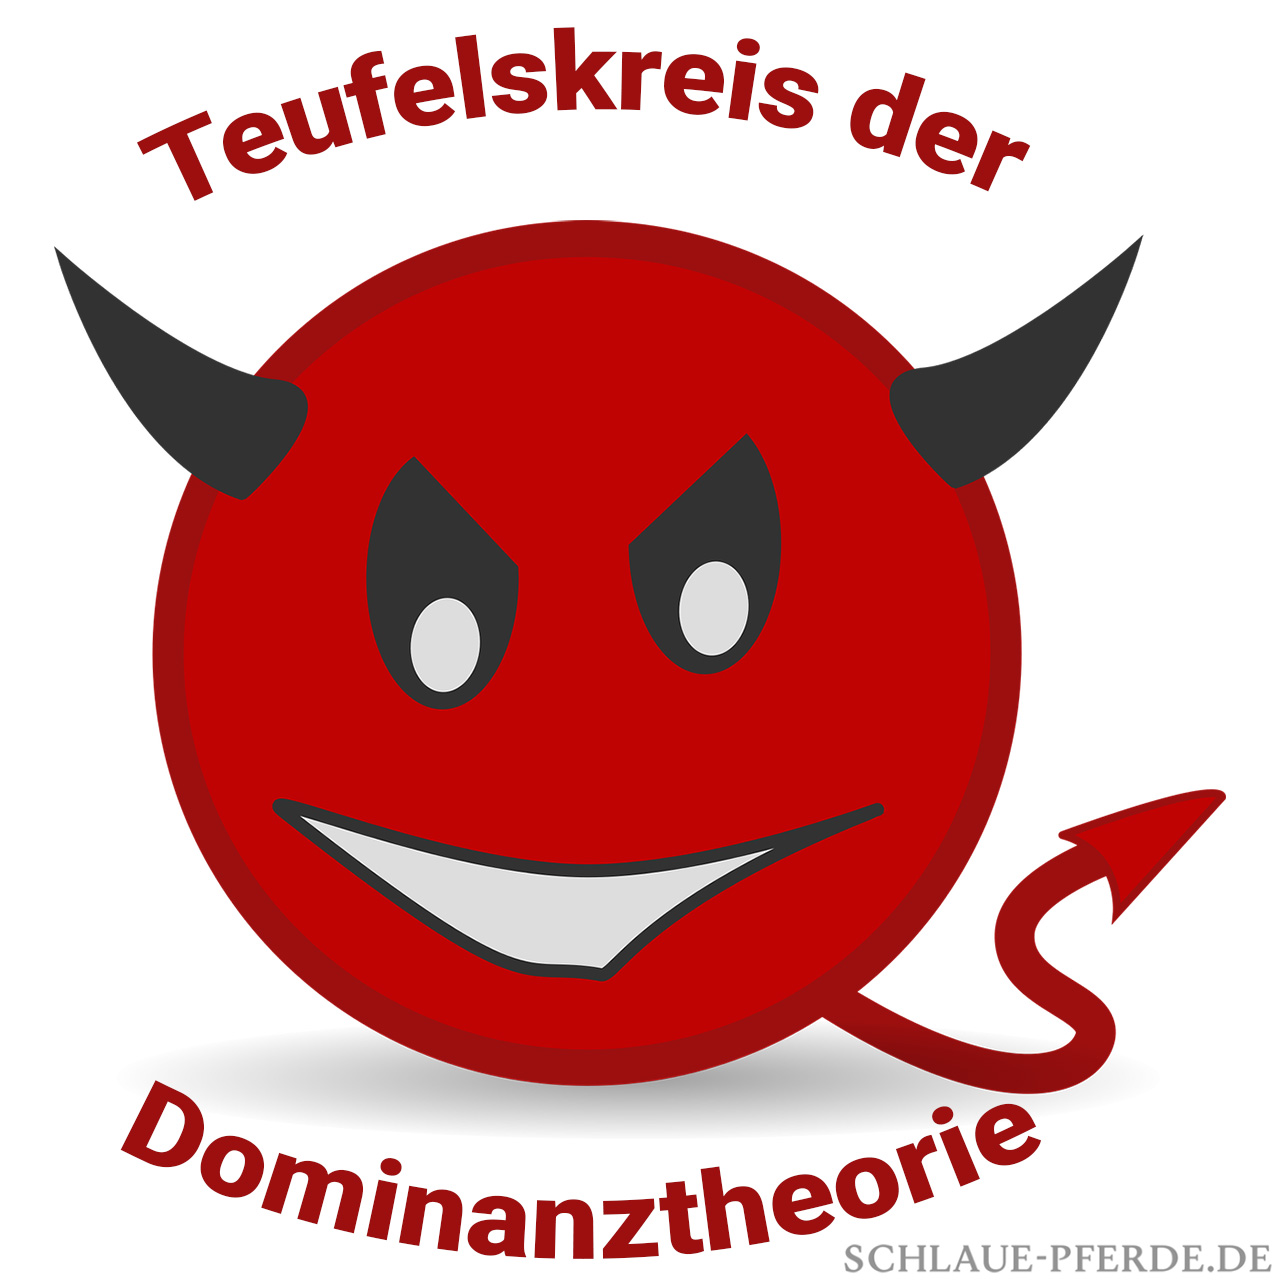 Teufelskreis beim Dominanztraining mit Pferden - Bild von Teufel mit Schriftzug